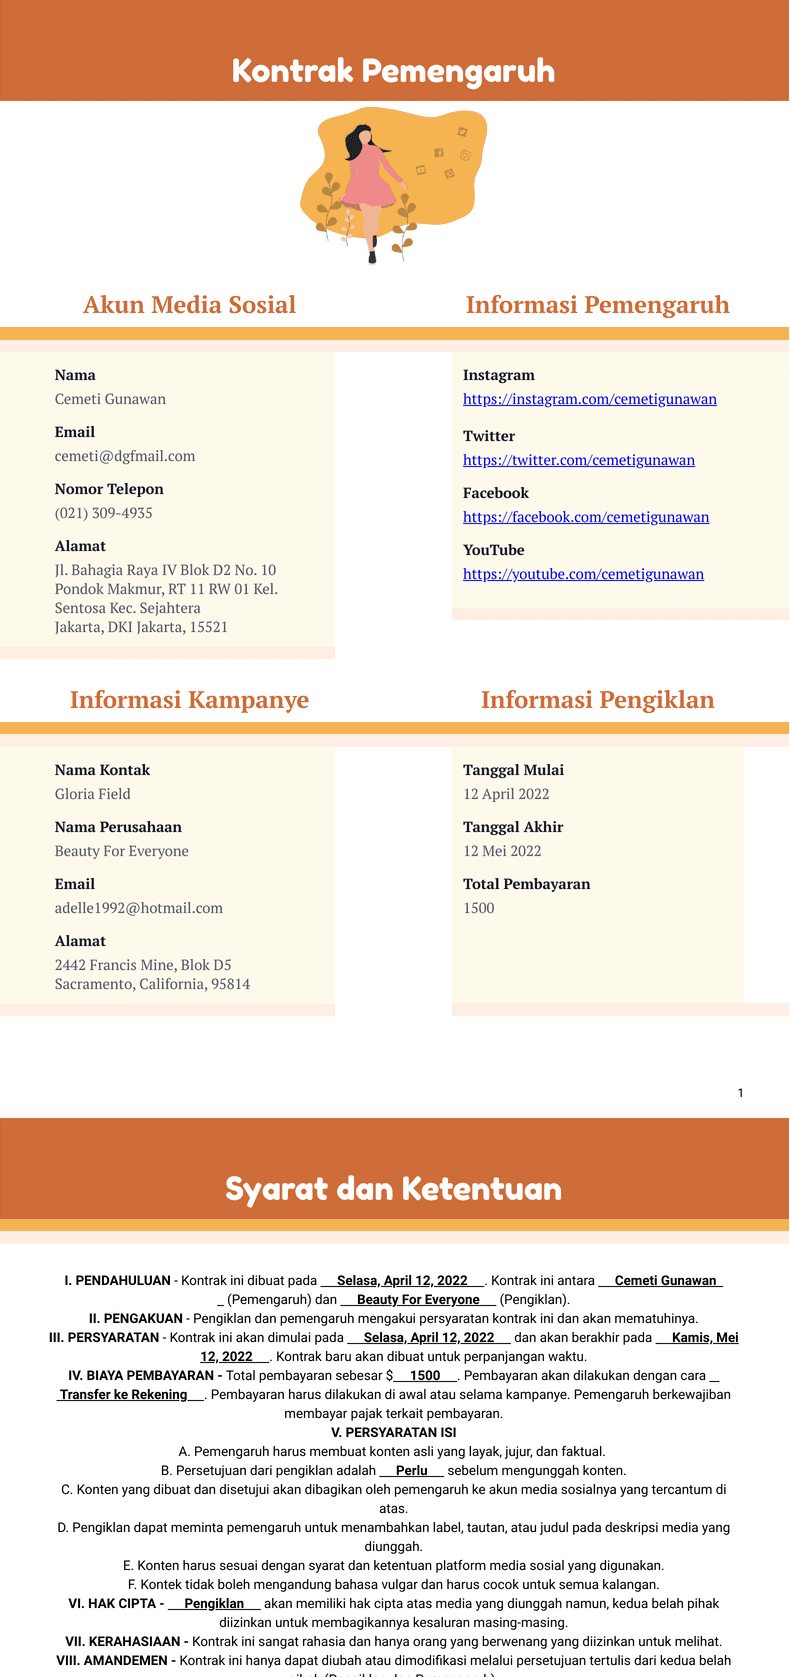 PDF Templates: Kontrak Pemengaruh